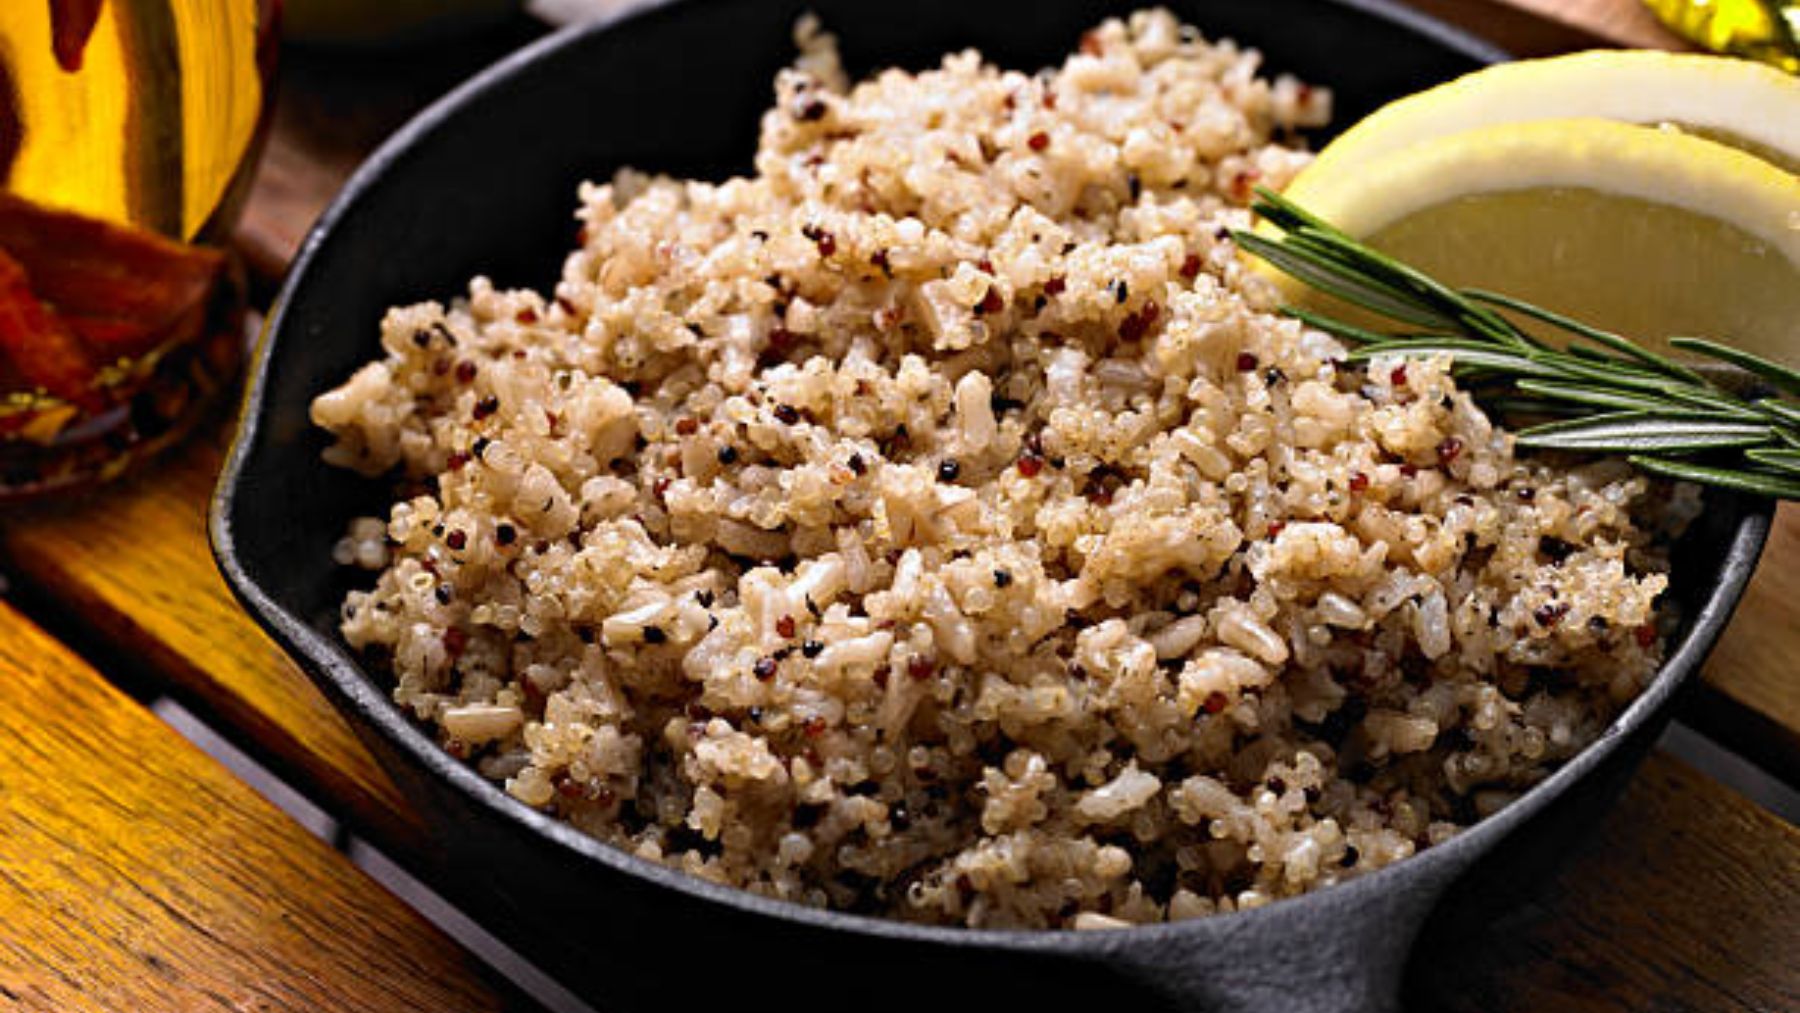 Descubre qué engorda menos: la quinoa o el arroz